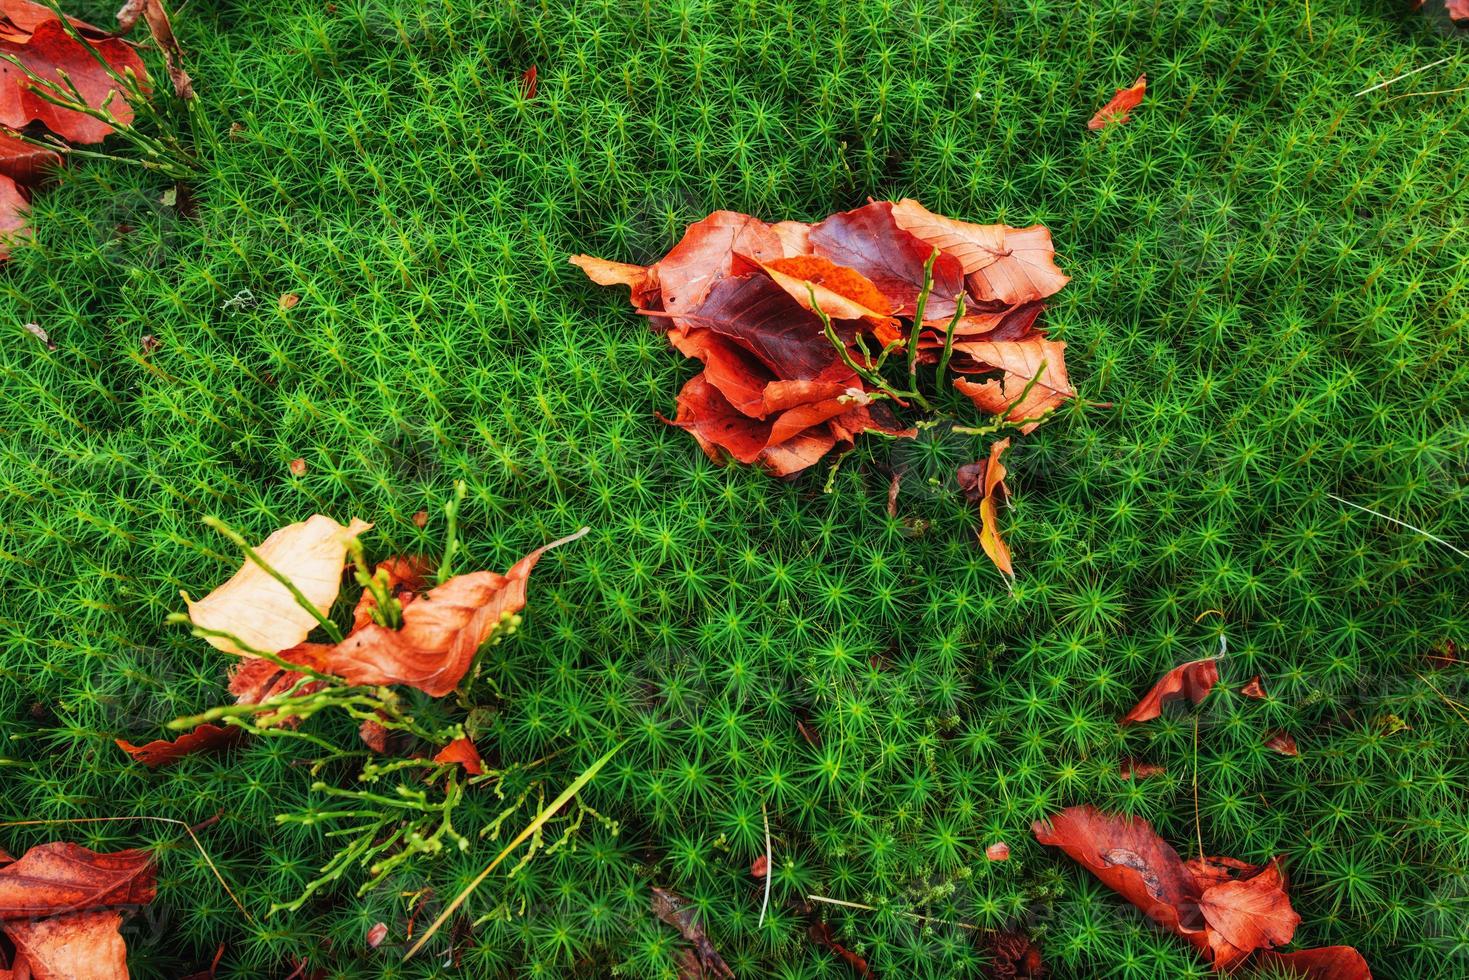 foglia d'acero rossa su terreno verde muschio foto